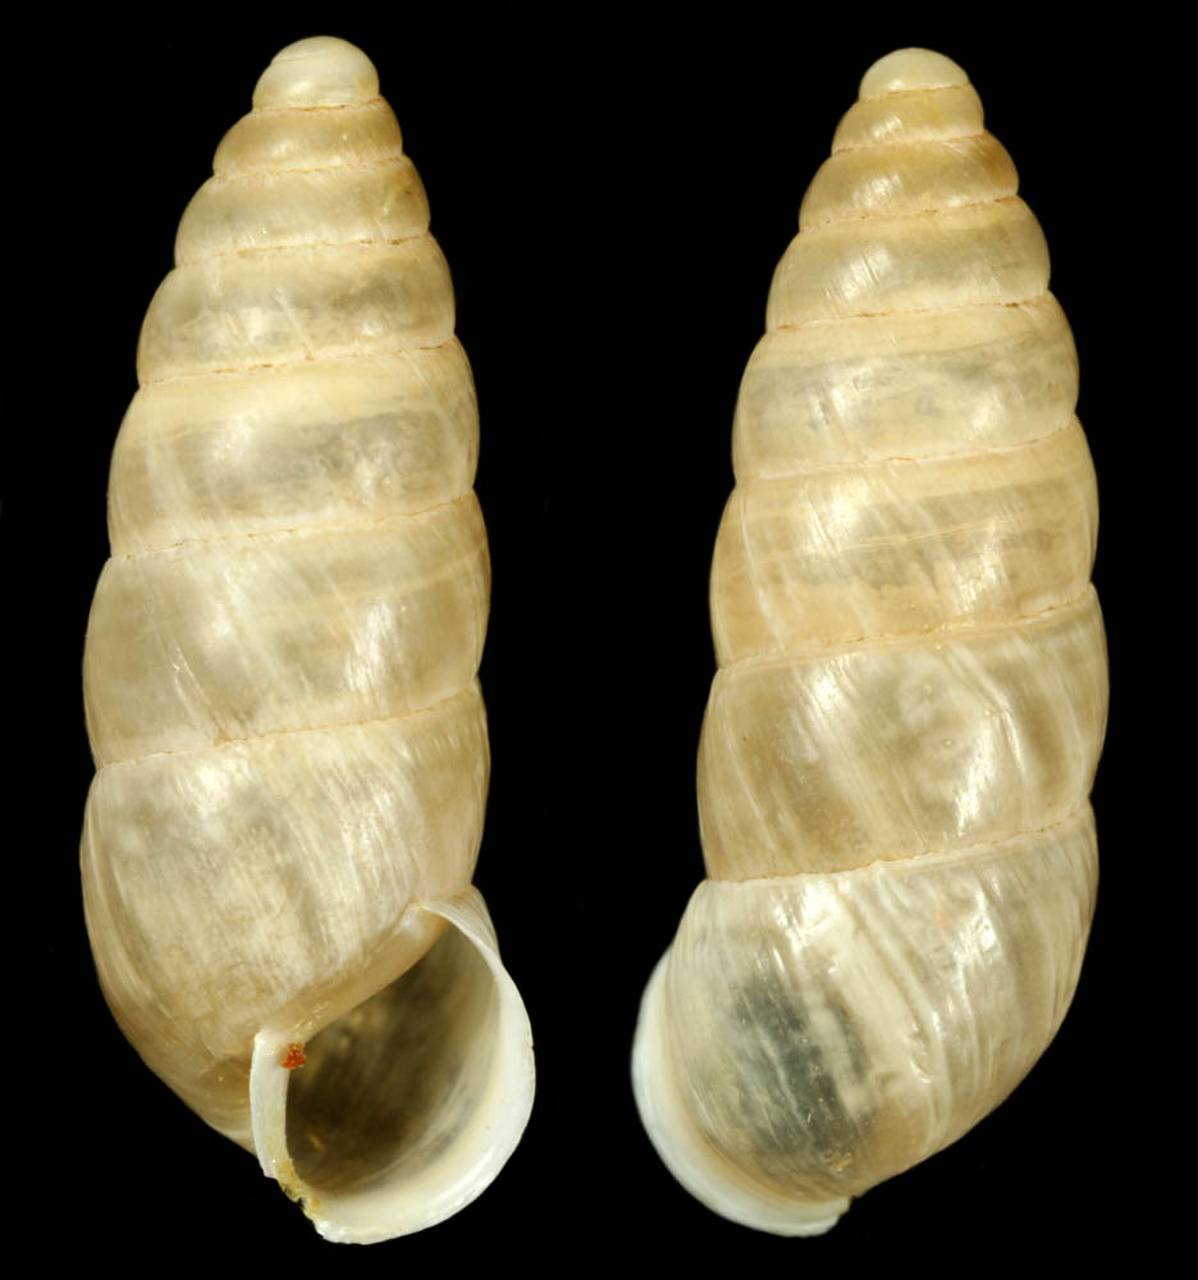 pseudonapaeus_izzatullaevi_holotype, Surxondaryo Region (Uzbekistan)